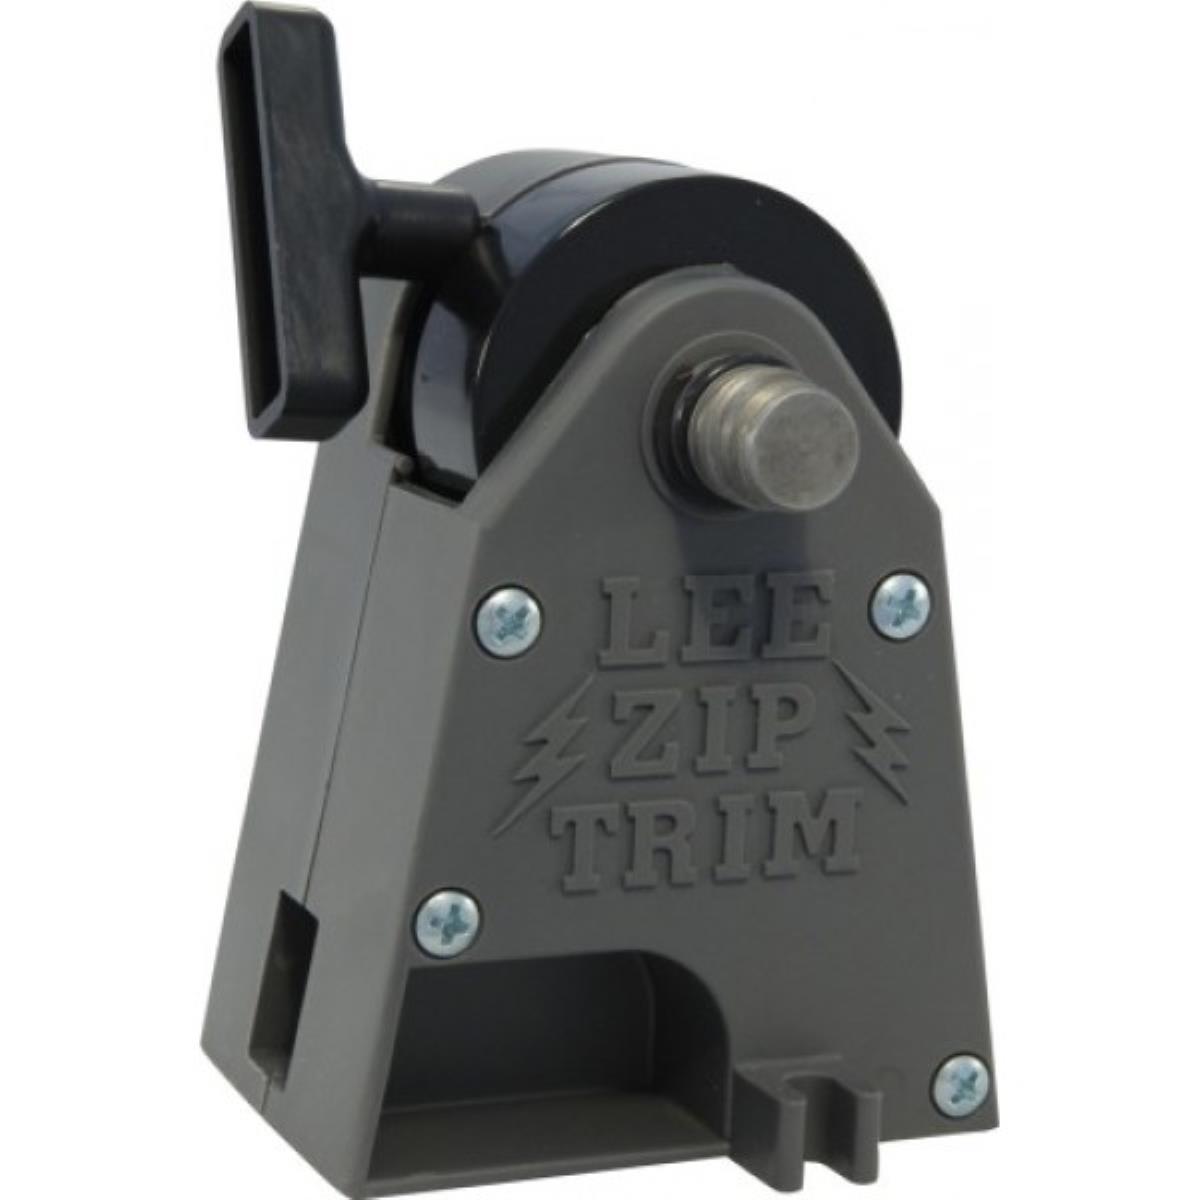 Триммер для гильз LEE Zip Trim LEE Precision (США) съемник гильз блока цилиндров двигателя car tool